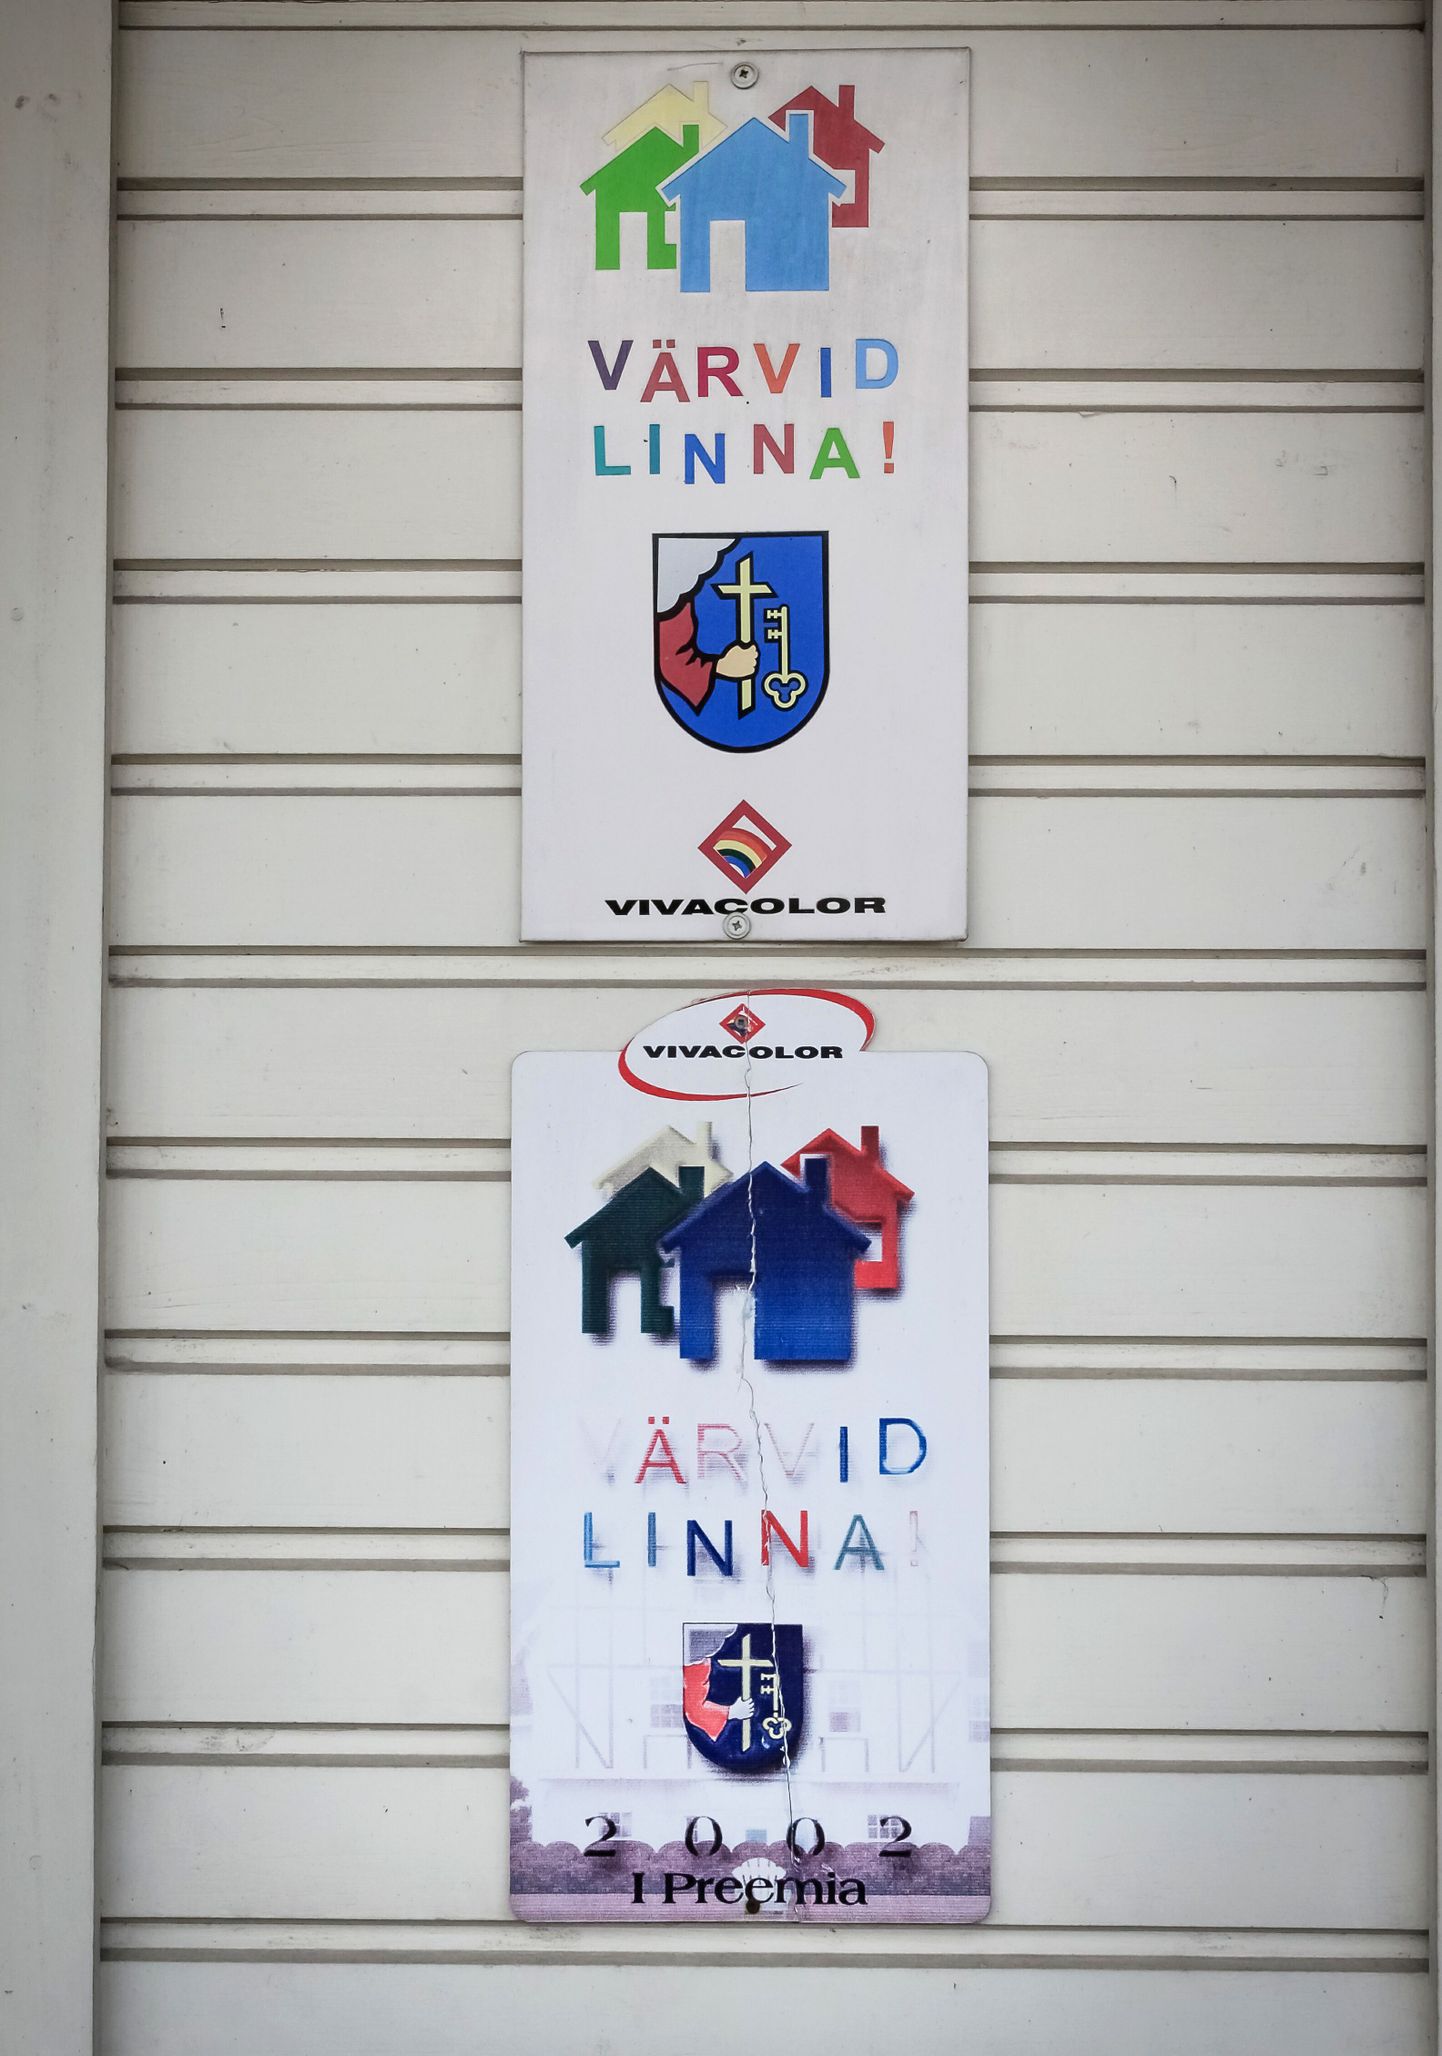 Pärnu linnavalitsus kinnitas konkursi "Värvid linna!" tulemused. Foto on illustreeriv.